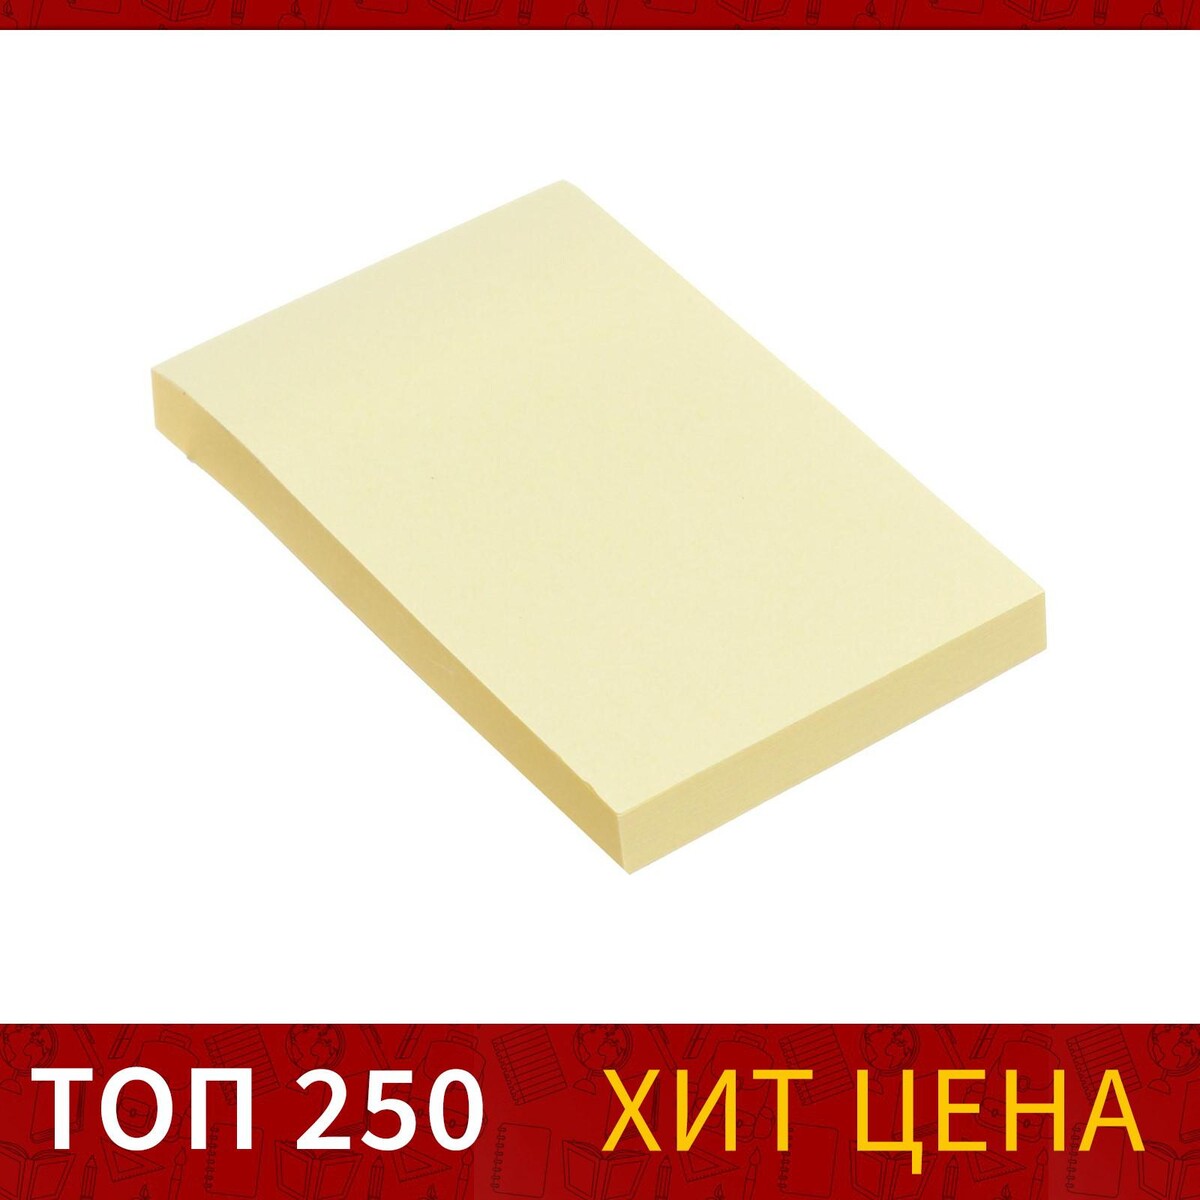 Блок с липким краем 51 мм х 76 мм, 80 листов, пастель, желтый